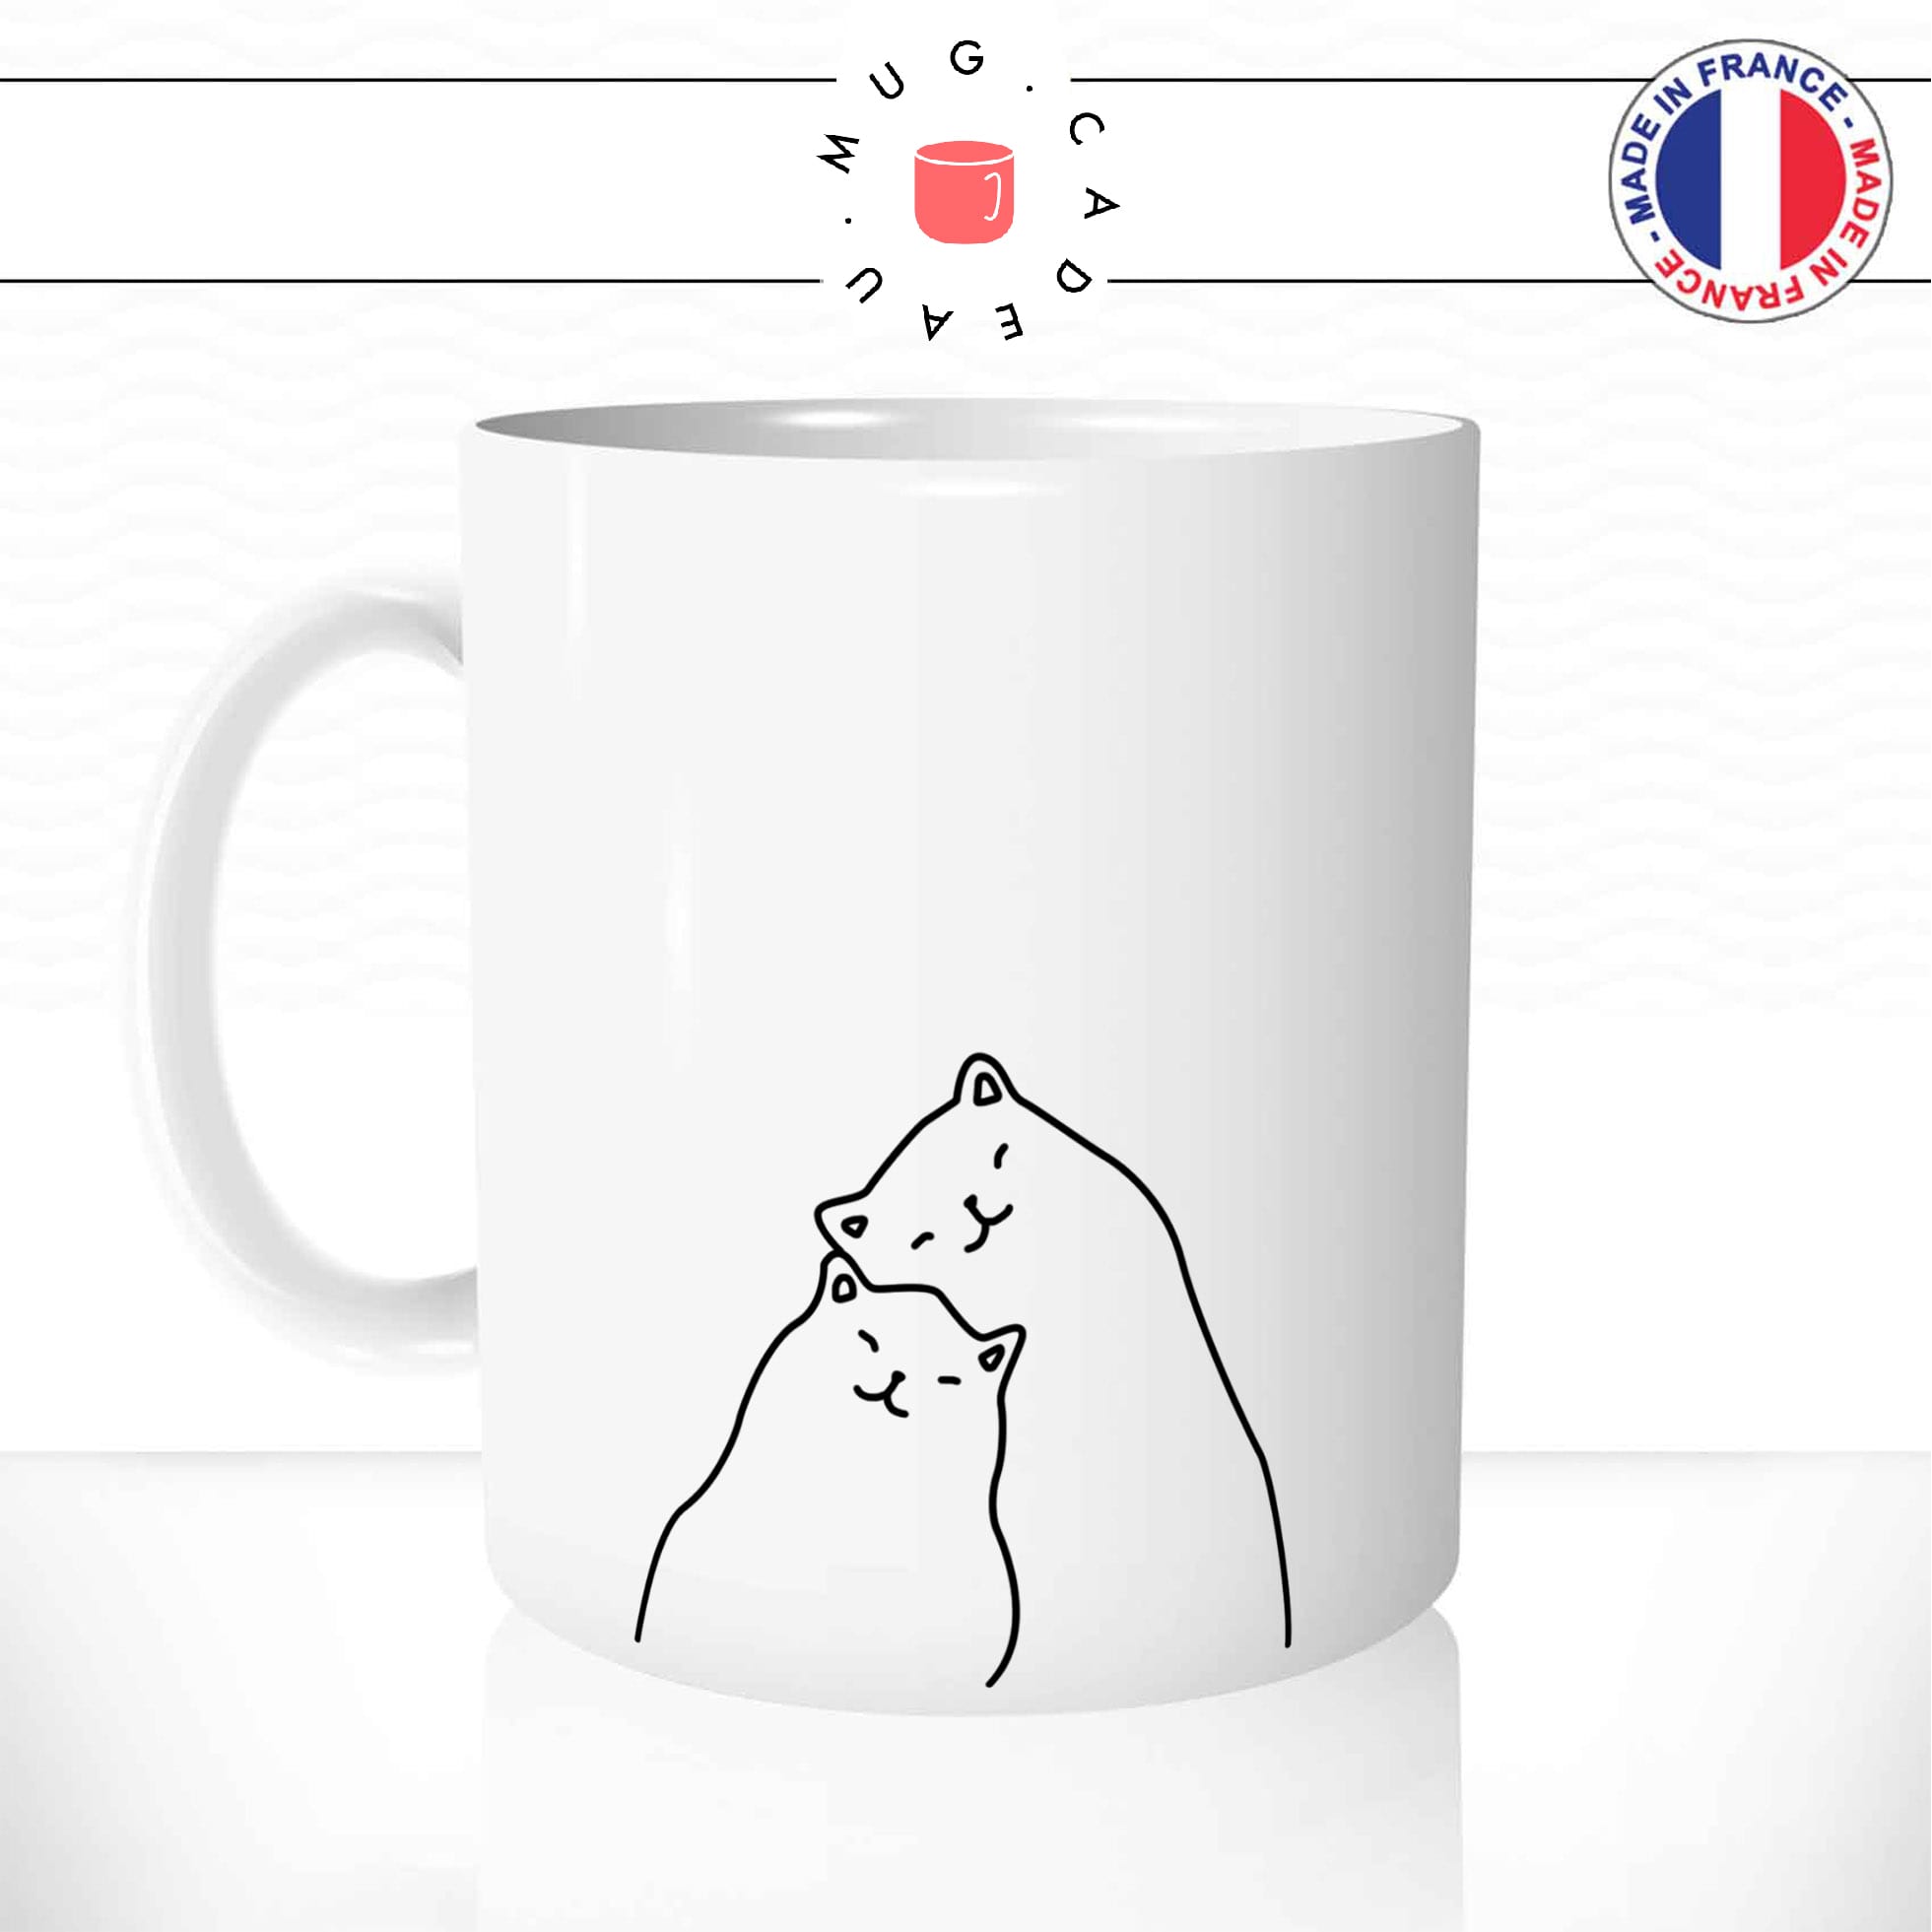 mug-tasse-chat-chaton-couple-deux-simple-amour-drole-mignon-dessin-animal-cafe-thé-idée-cadeau-original1